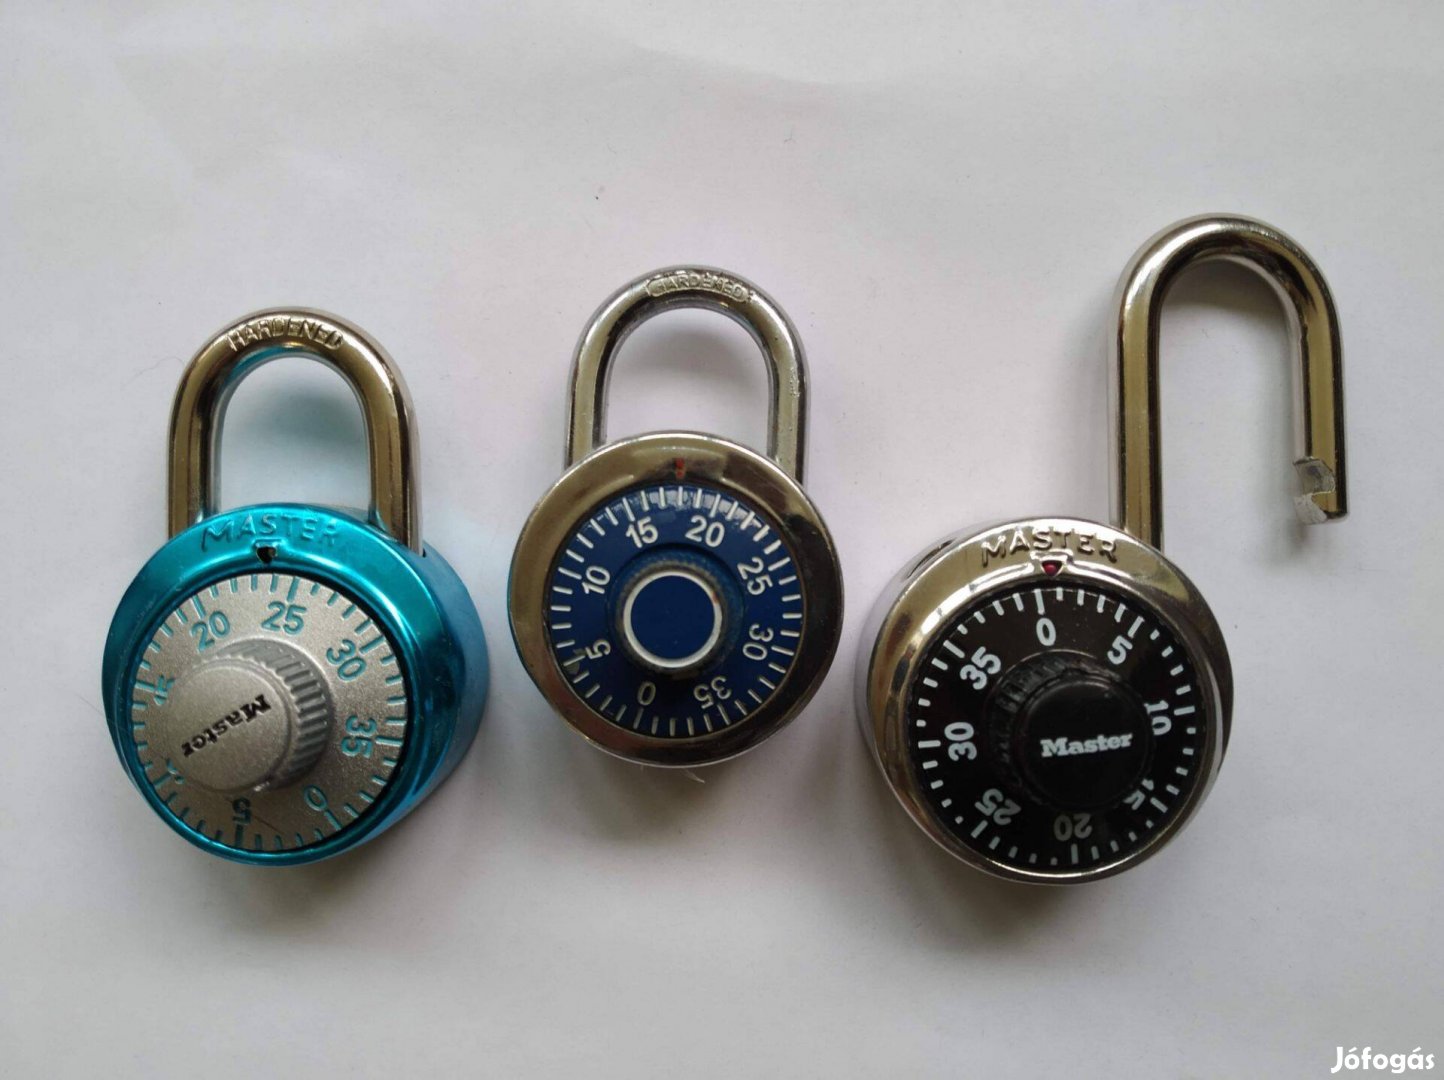 Master Lock masterlock lakatok padlock kód nélkül locked zár